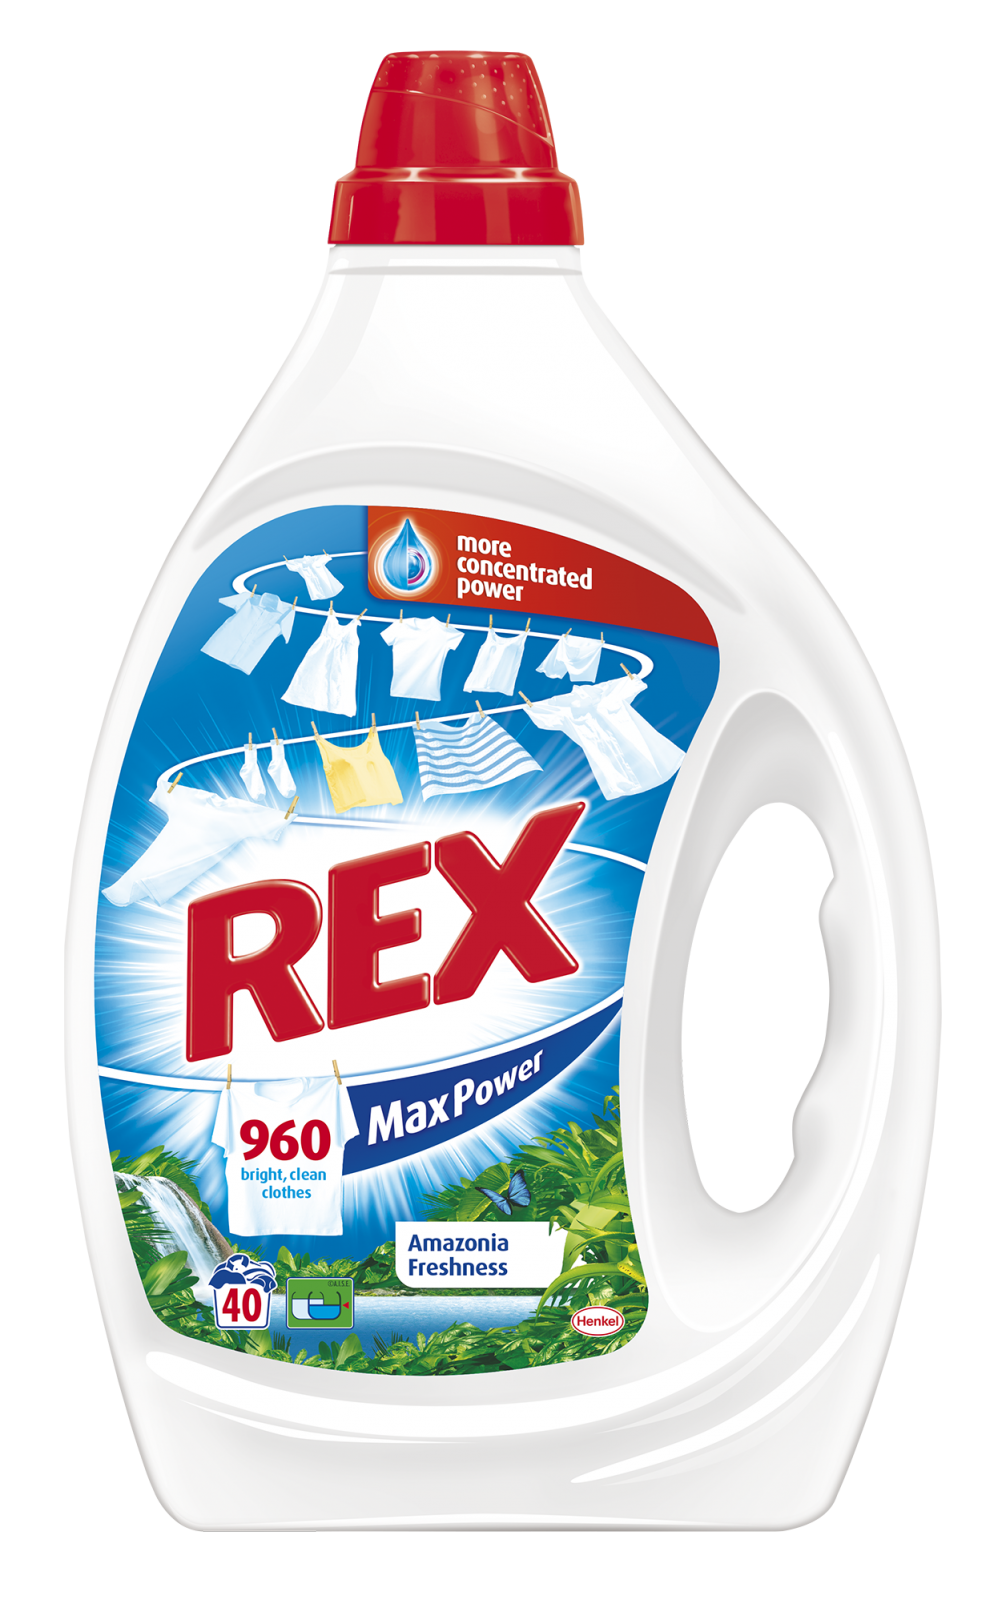 Rex Amazonia freshness gel